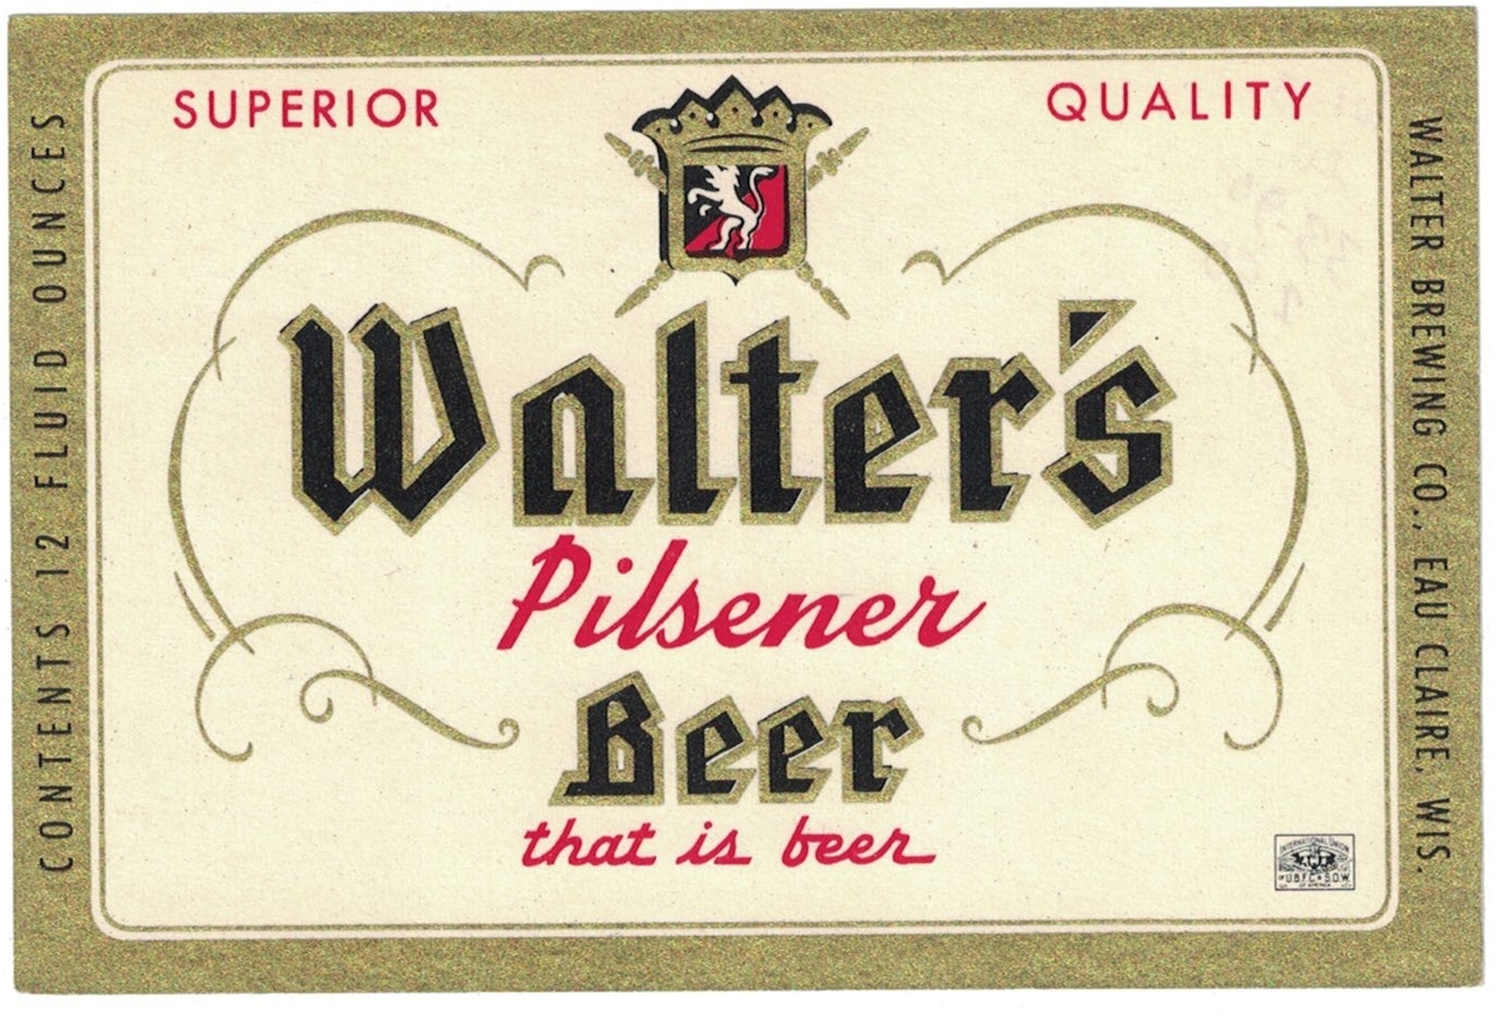 Walter's Pilsener Beer Label